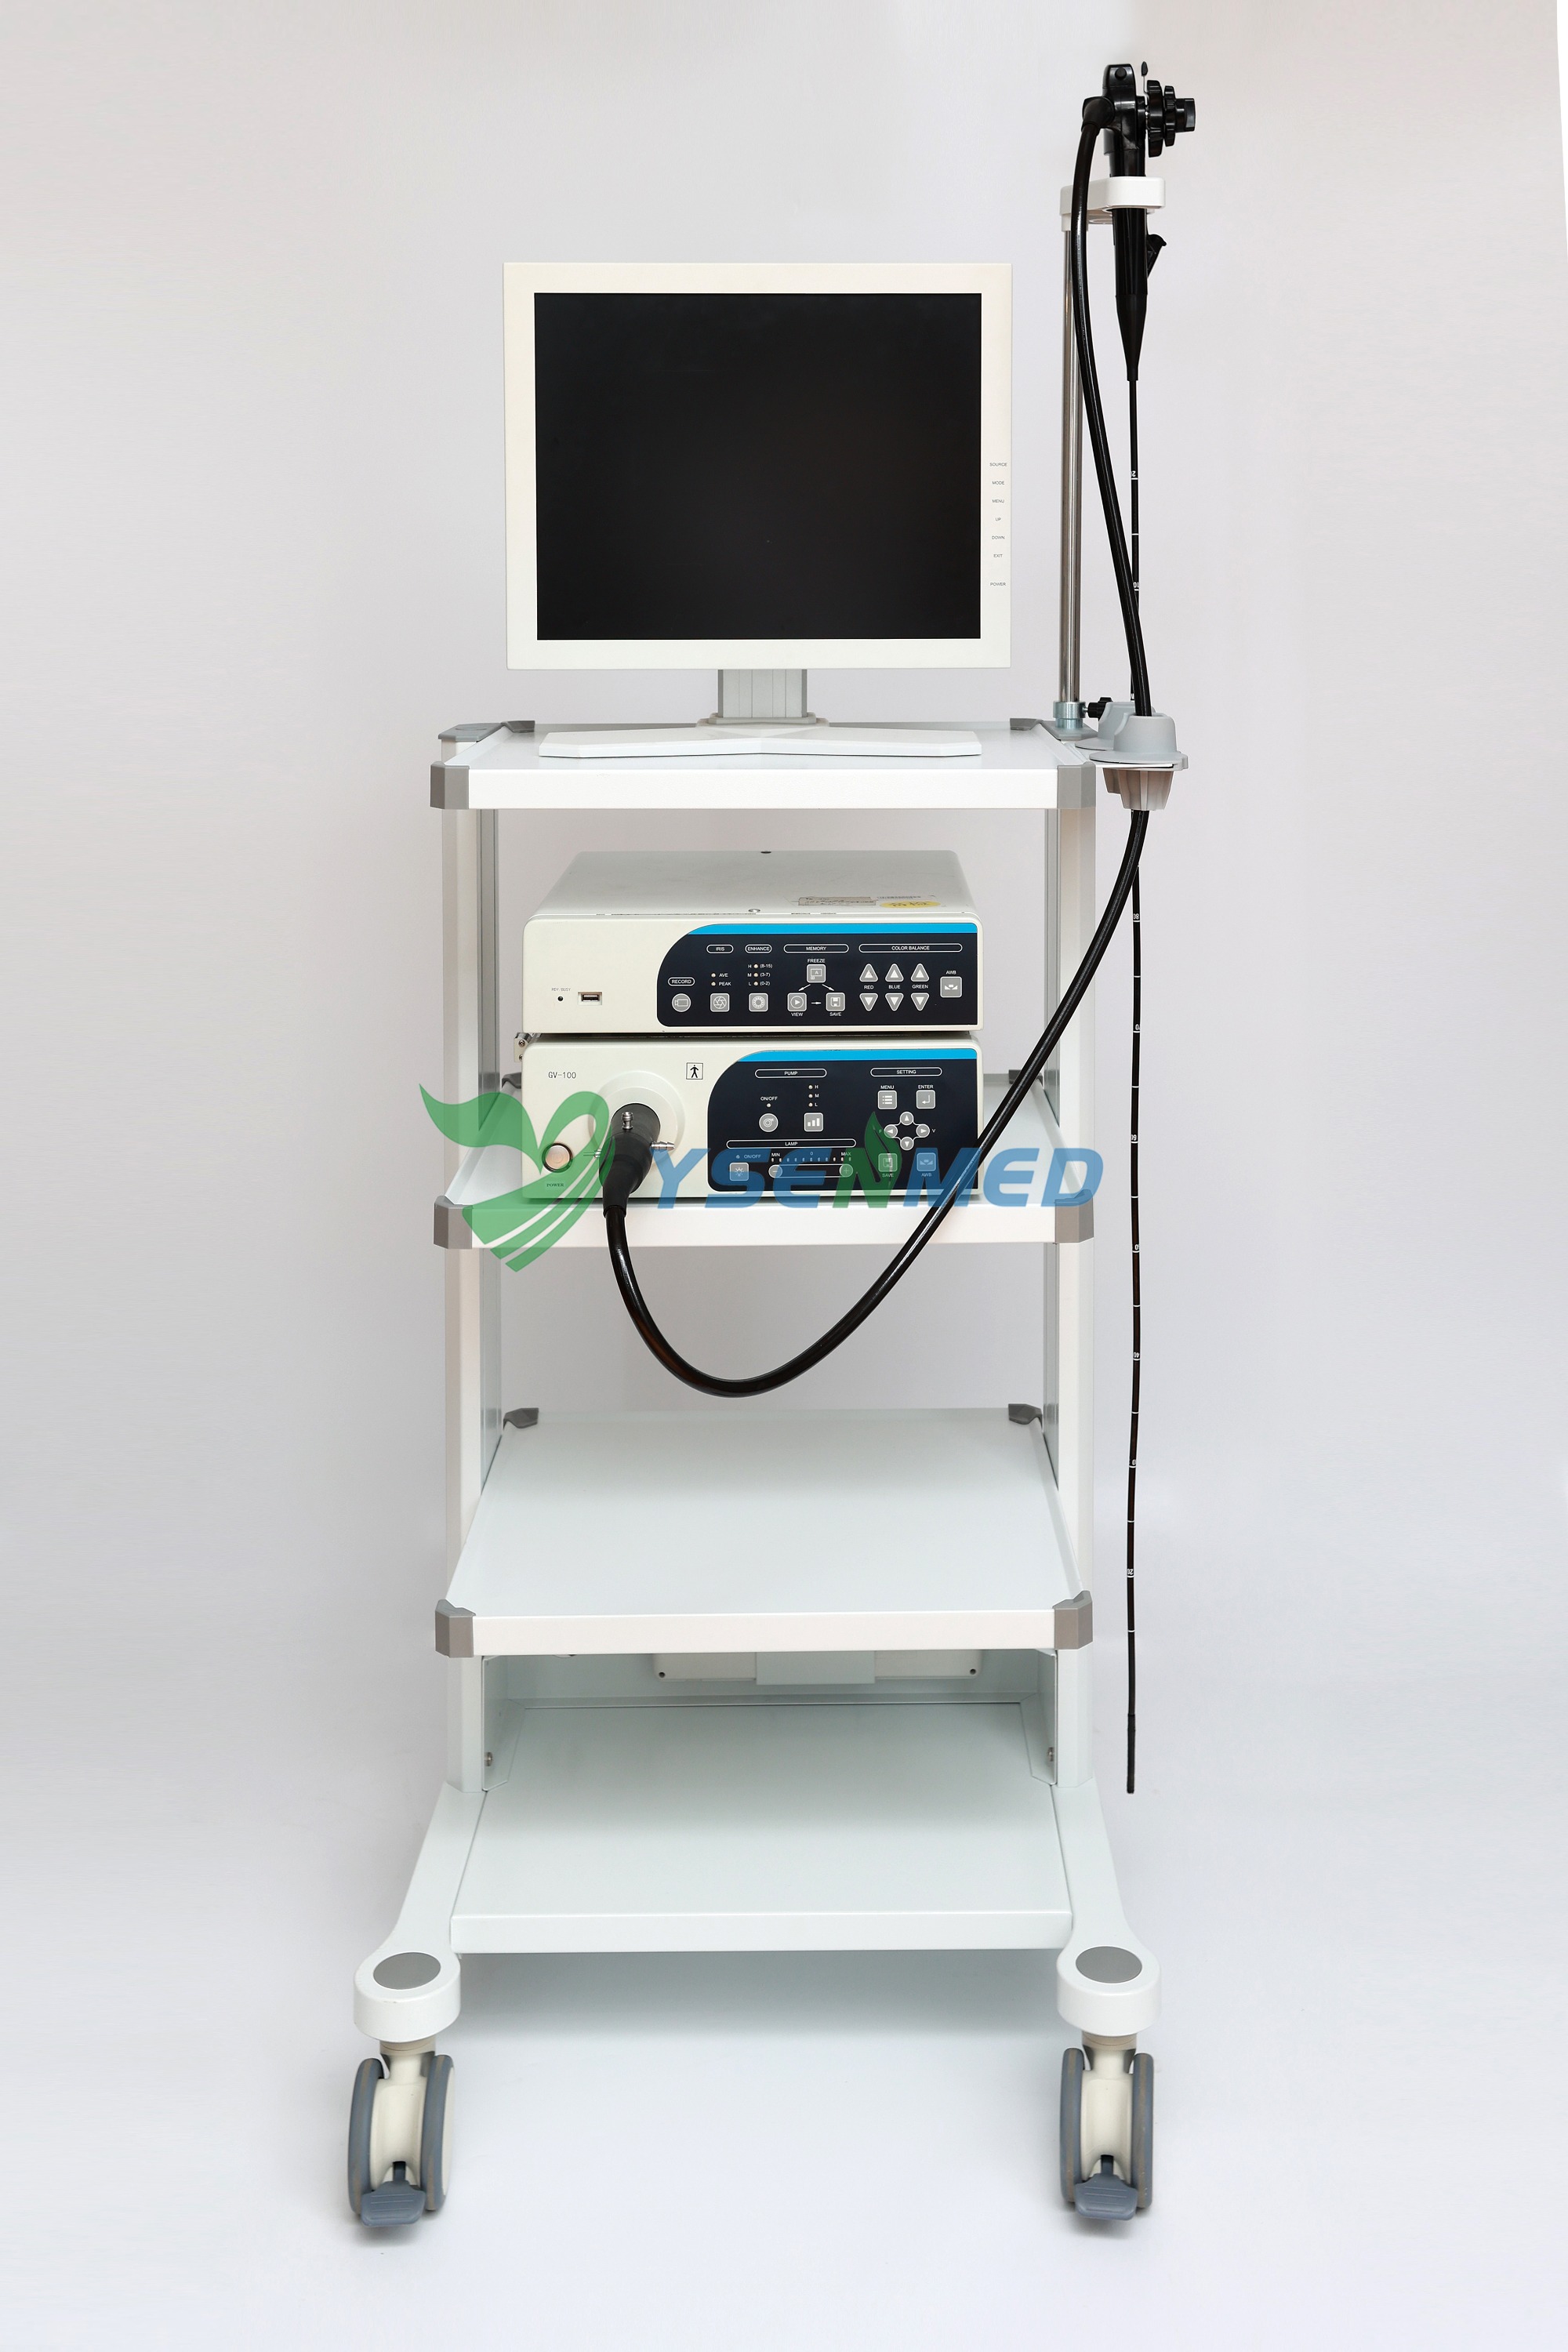 Видеоэндоскопическая система HD YSVME-200 является бестселлером среди наших эндоскопов благодаря четкому изображению и разумной цене.